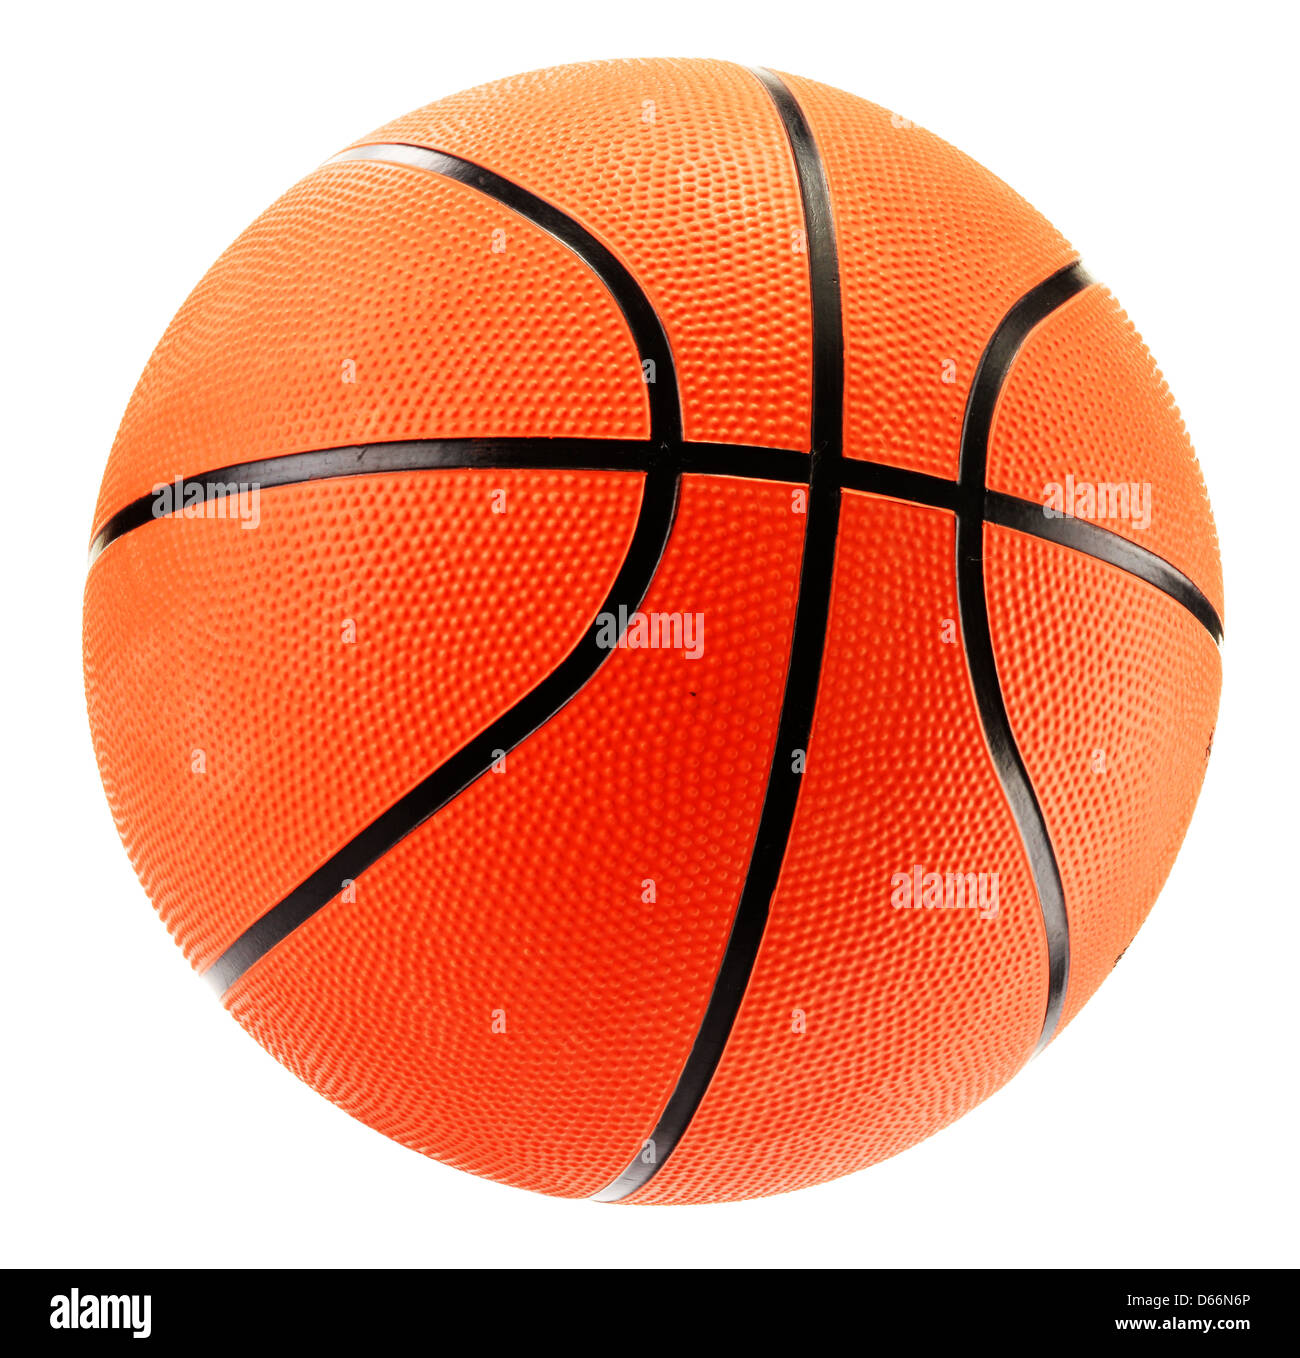 Basketball isolated on white background Stock Photo